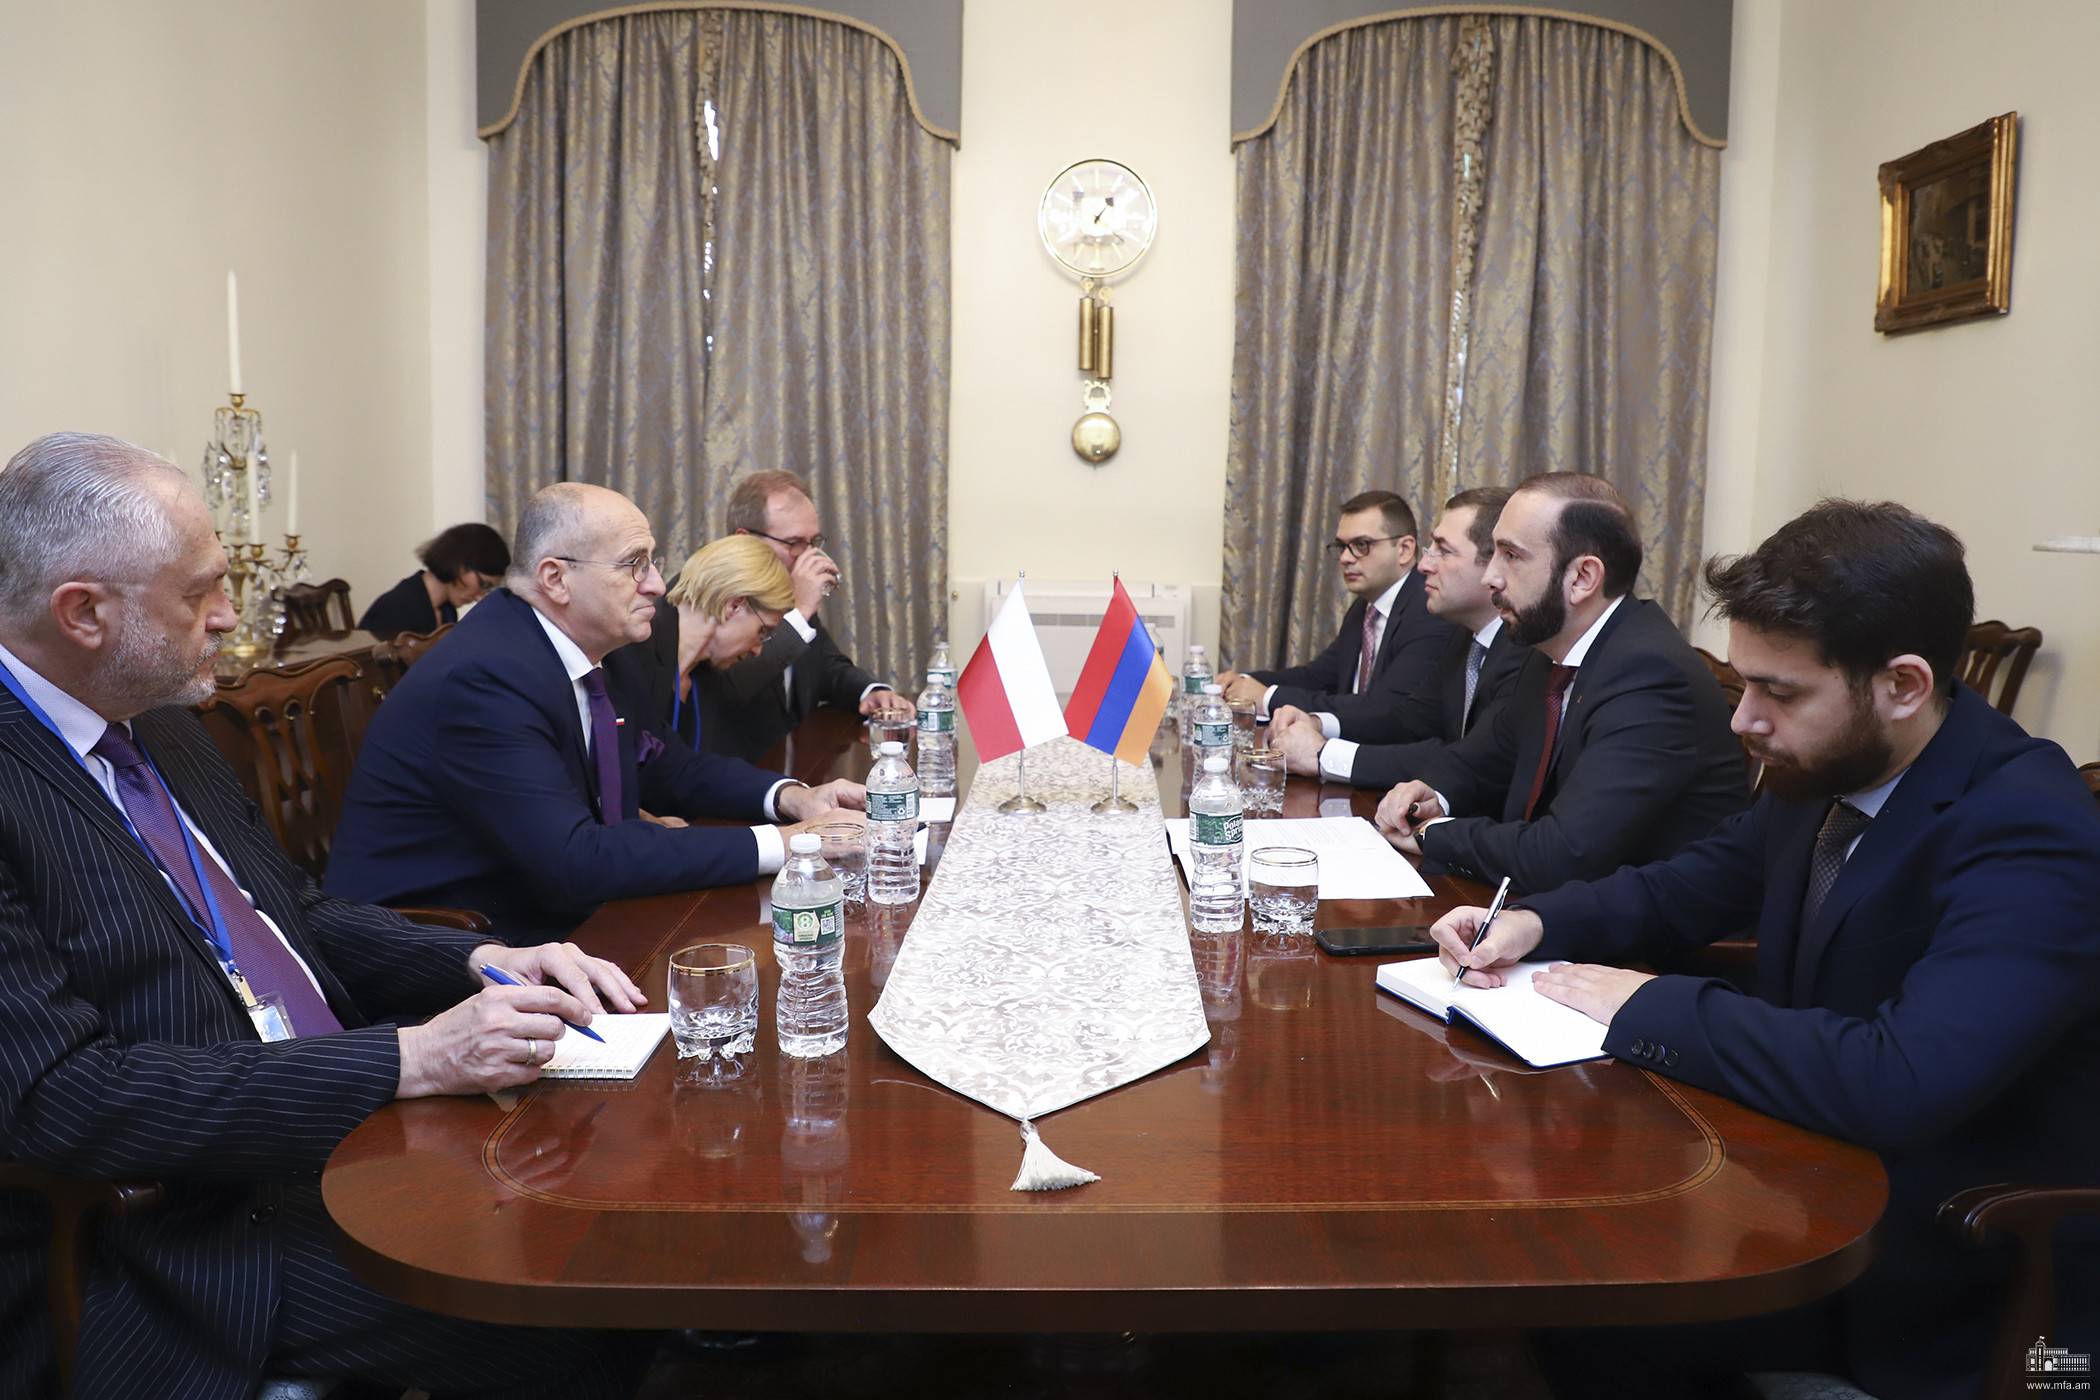 Глава МИД представил действующему председателю ОБСЕ подробности агрессии Азербайджана